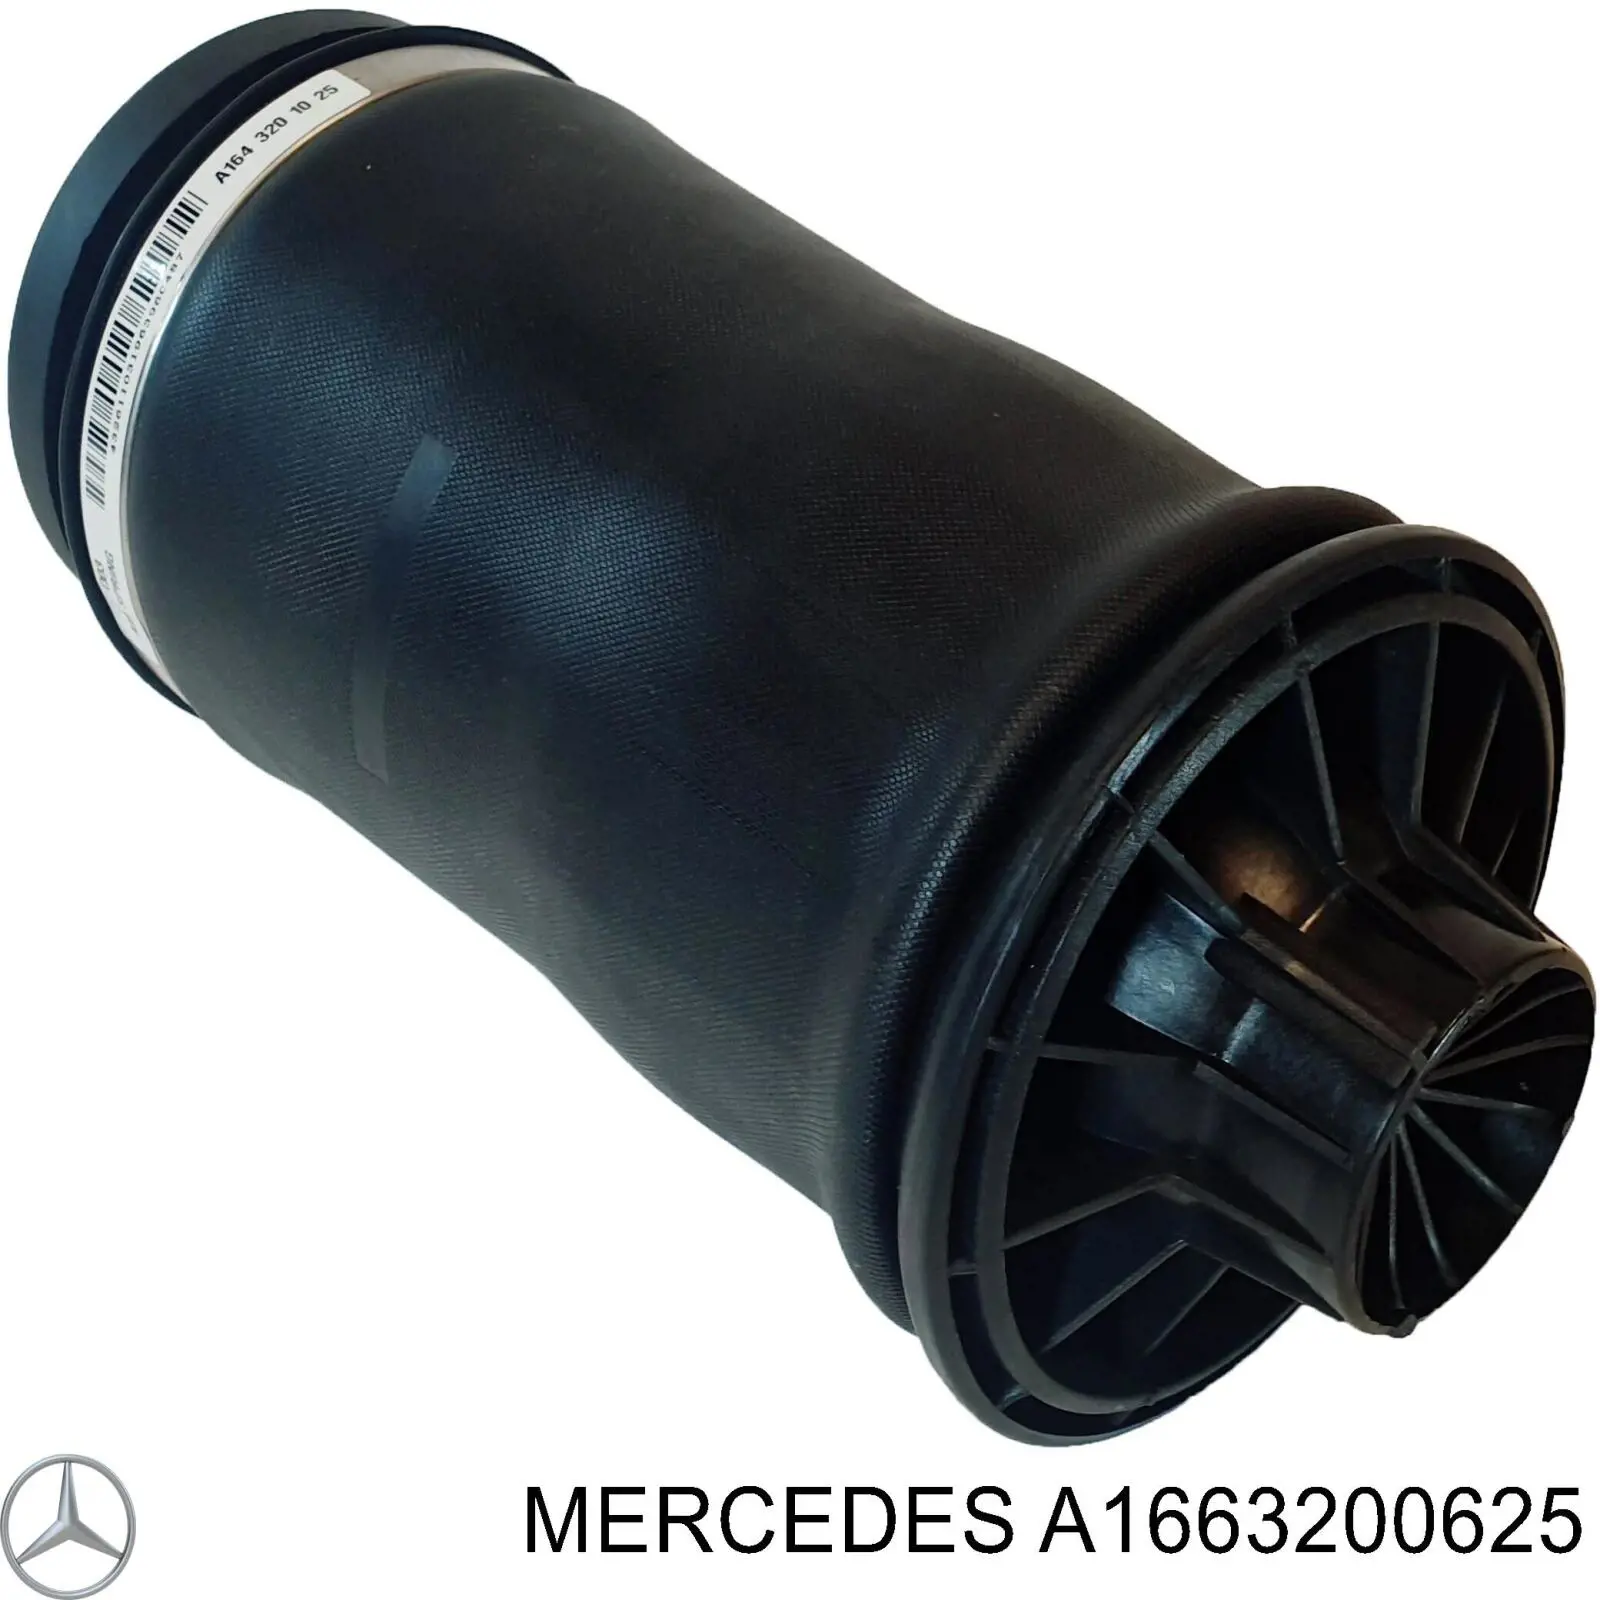 A1663200625 Mercedes muelle neumático, suspensión, eje trasero